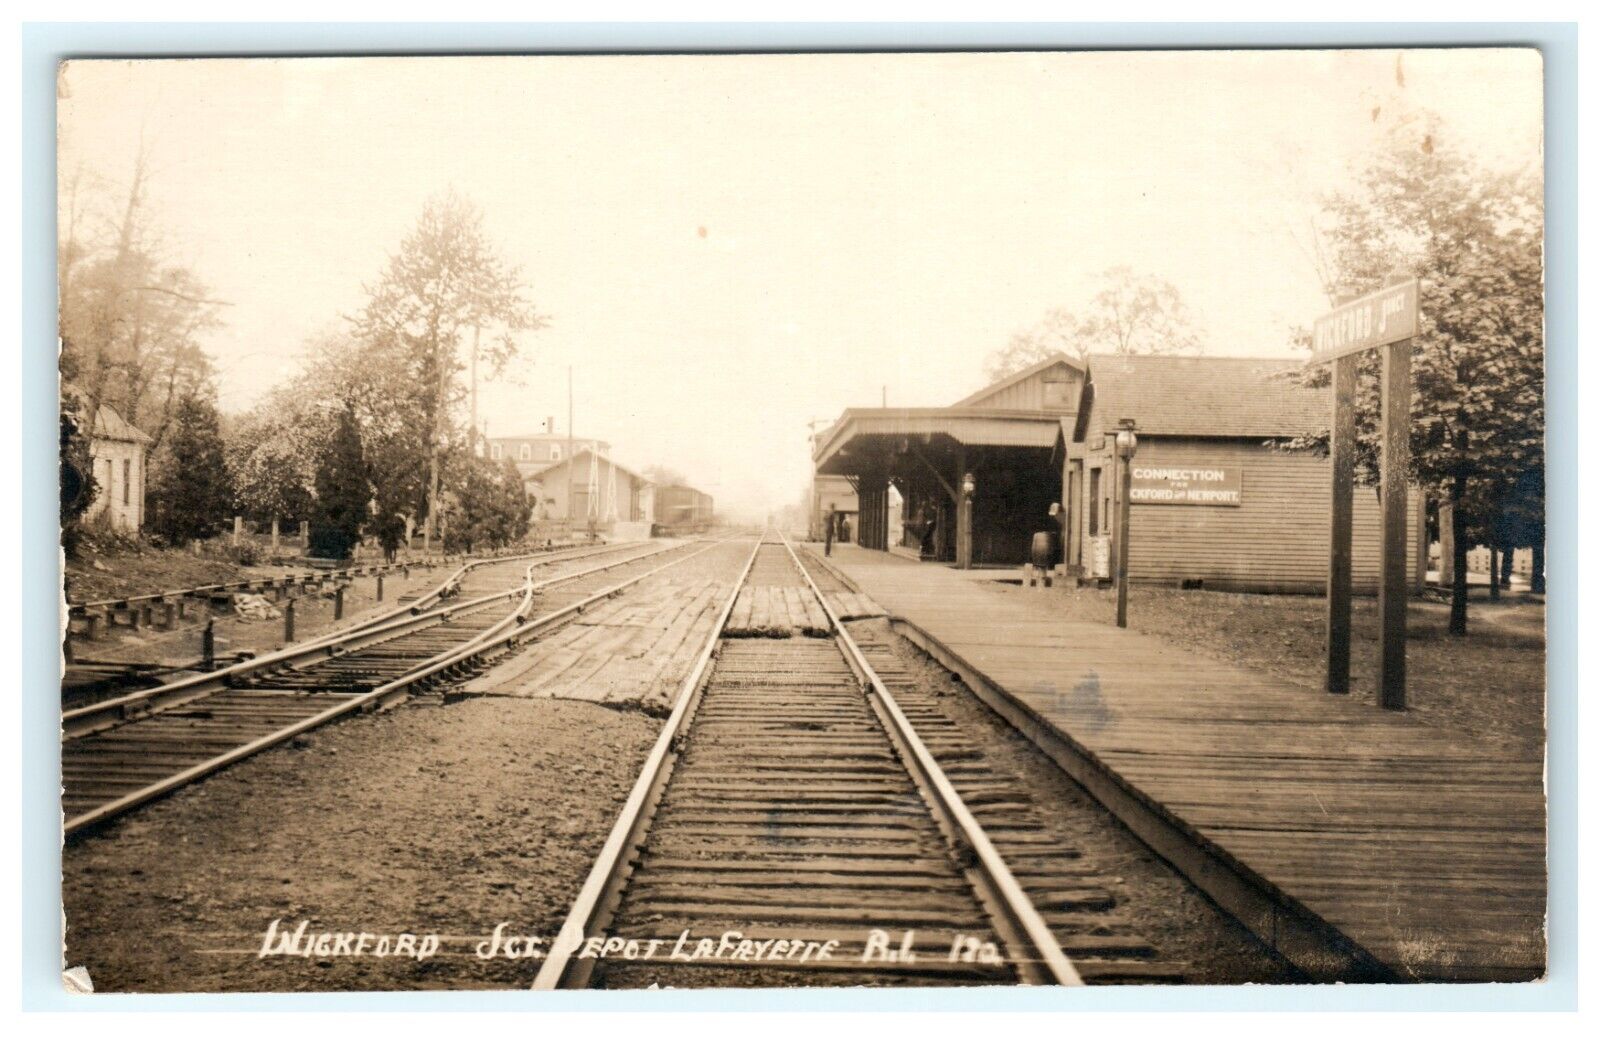 1913 Wickford Junction Train Depot Lafayette RI Rhode Island RPPC Postcard